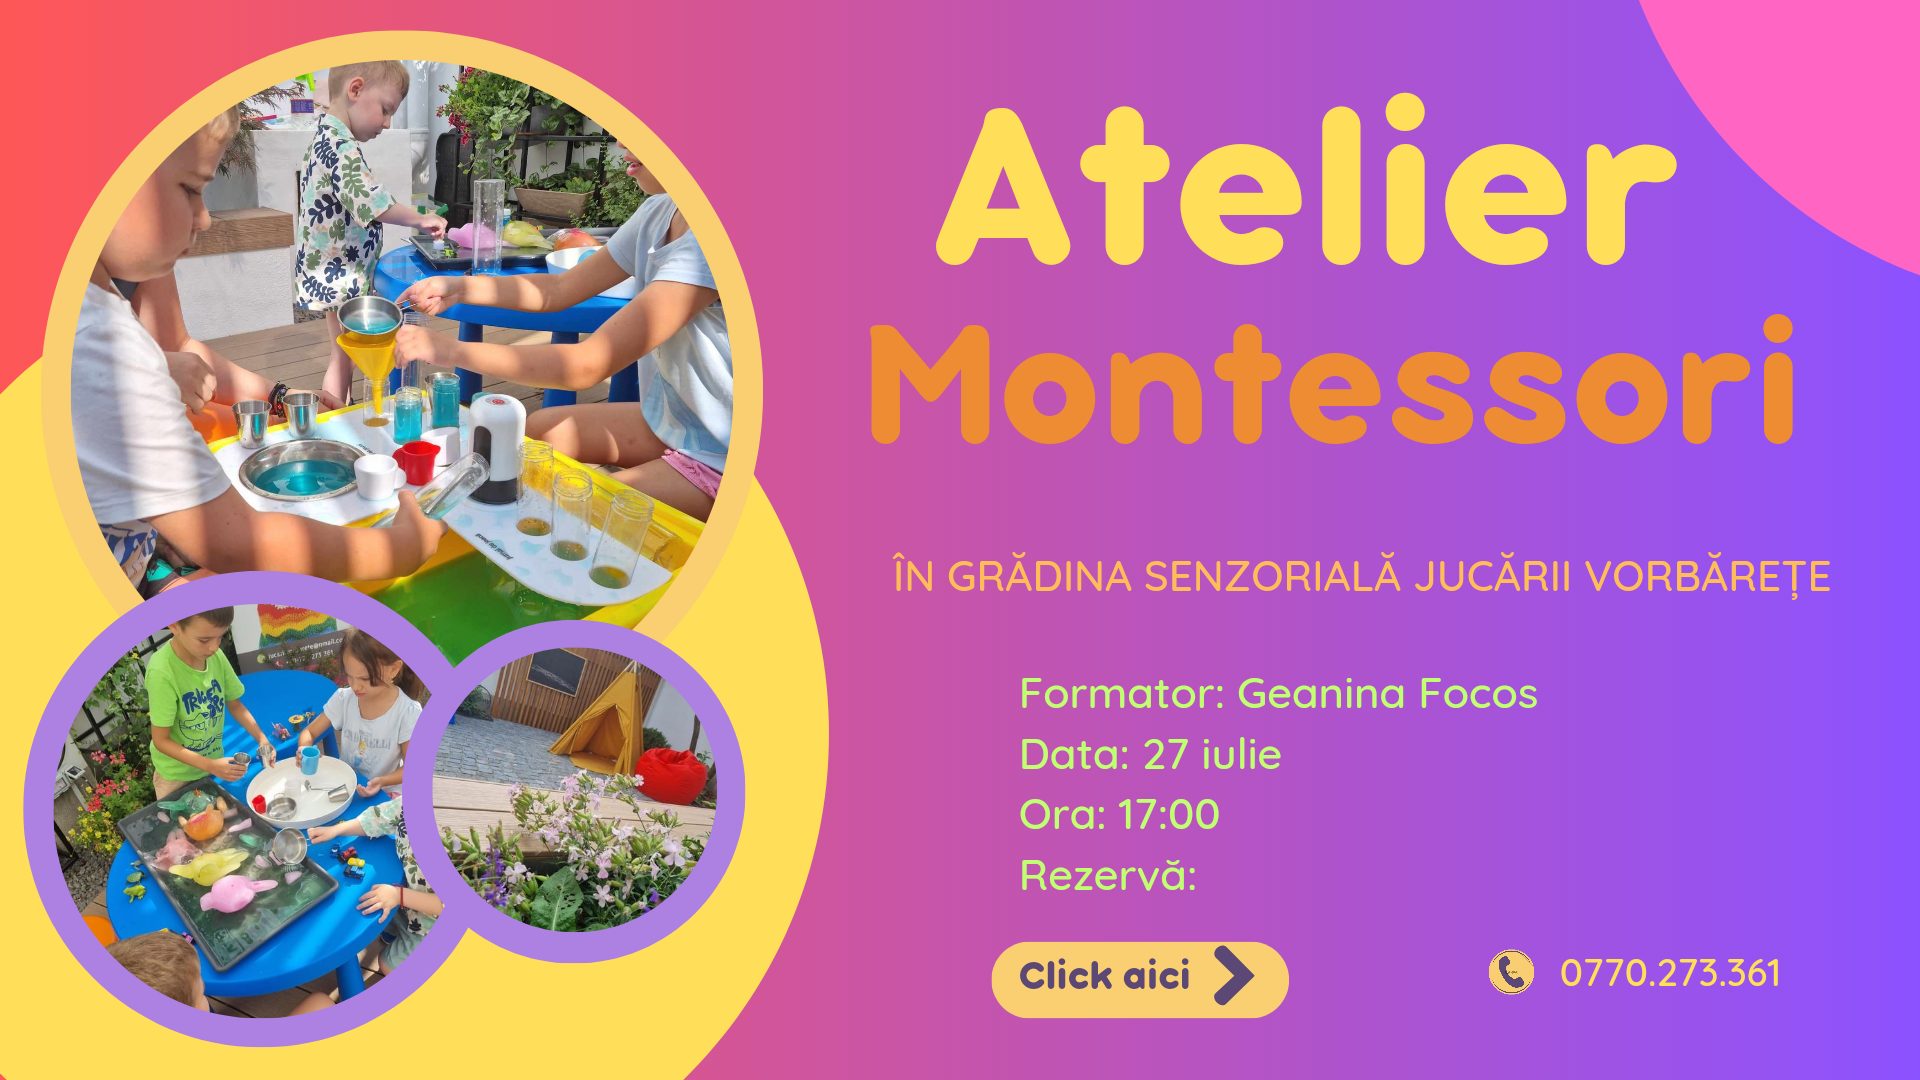 Atelier Montessori in Gradina senzoriala Jucarii Vorbarete